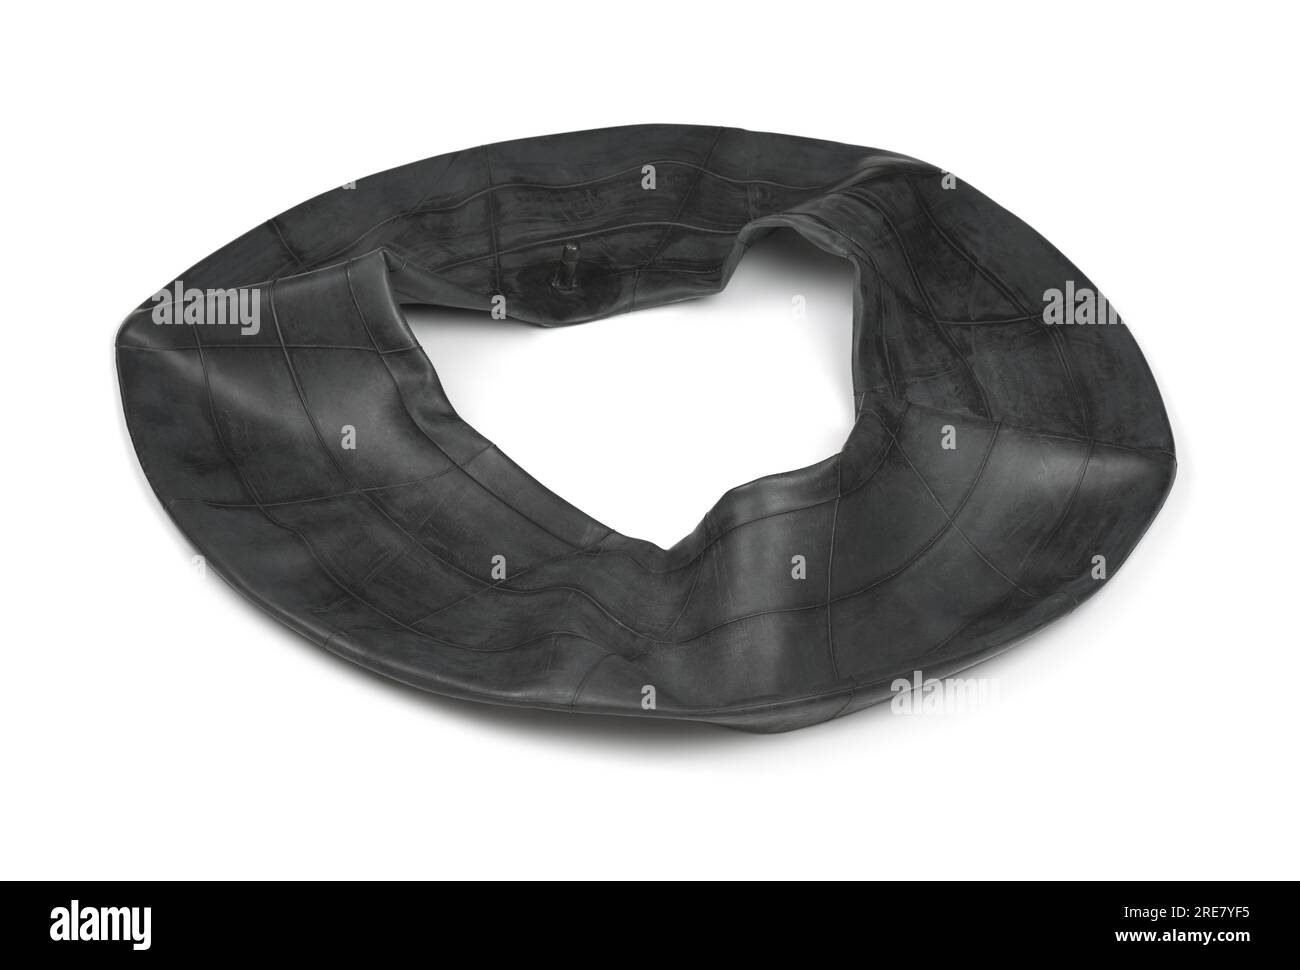 Black rubber car tire inner tube isolated on white Stock Photo